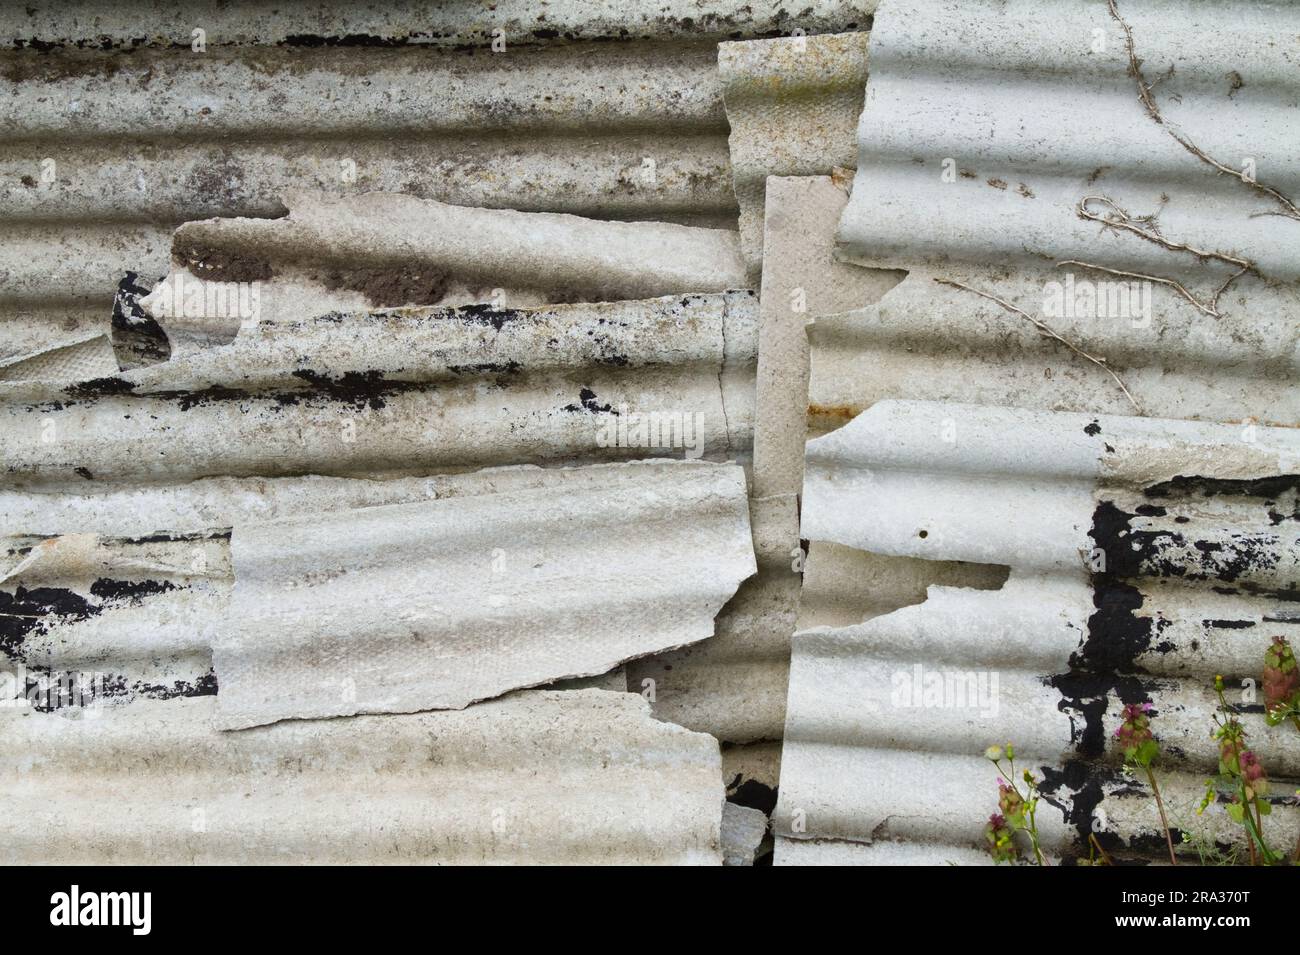 Pile di vecchi fogli di cemento in amianto rotti accumulati insieme. Tossico, cancro che induce problemi polmonari e asbestosi, Inghilterra Regno Unito Foto Stock